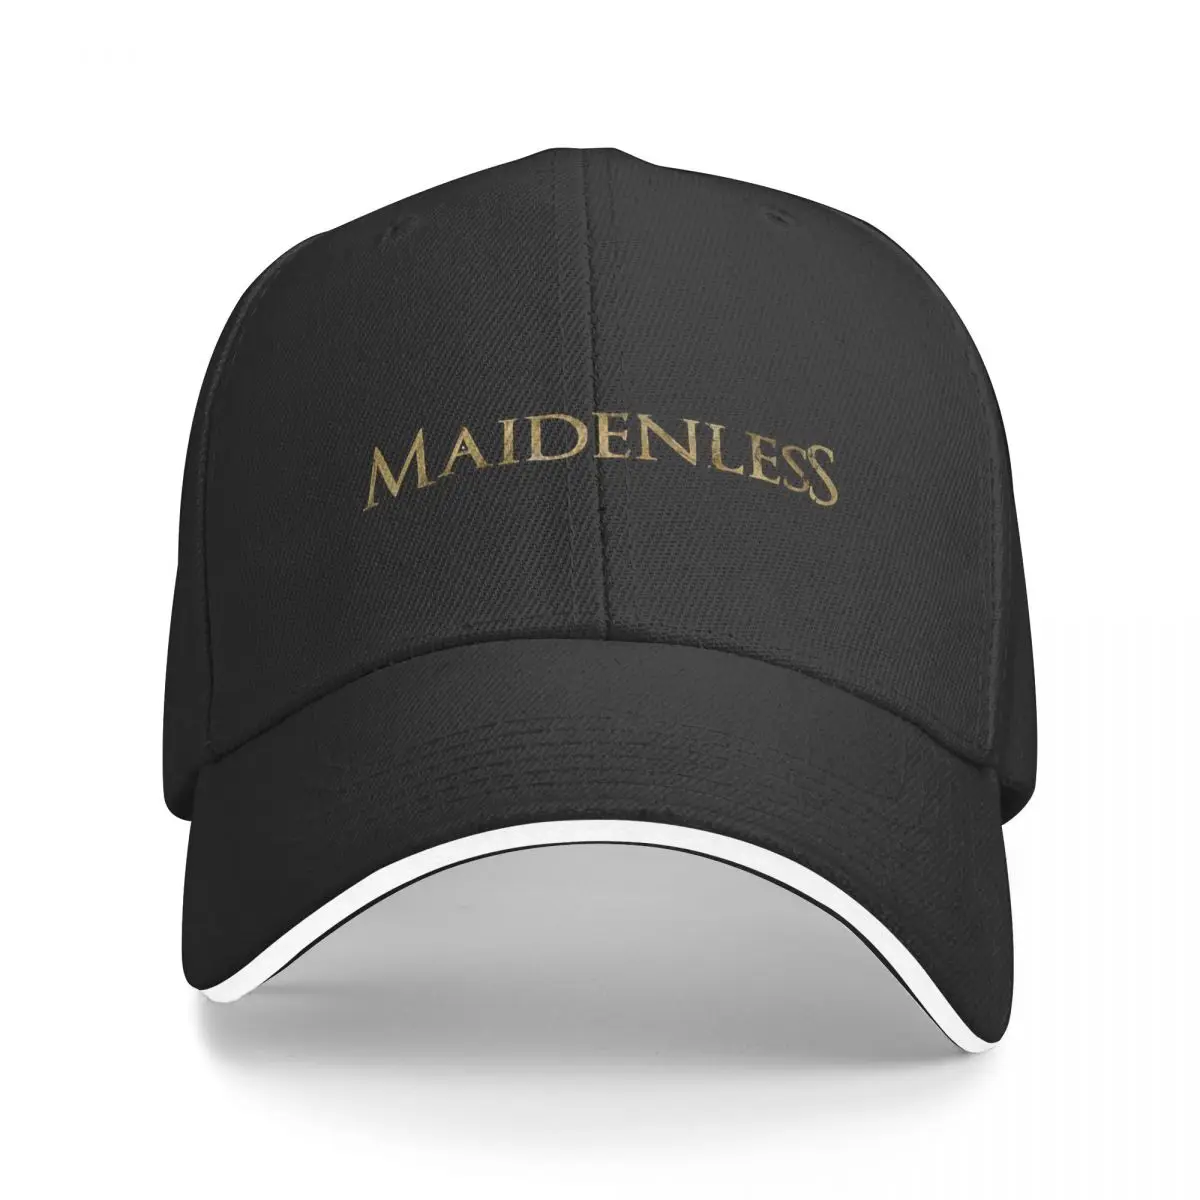 

Бейсболка Maidenless (без кольца), унисекс, для улицы, головной убор, Снэпбэк, дышащая шляпа, Настраиваемые многоцветные шляпы